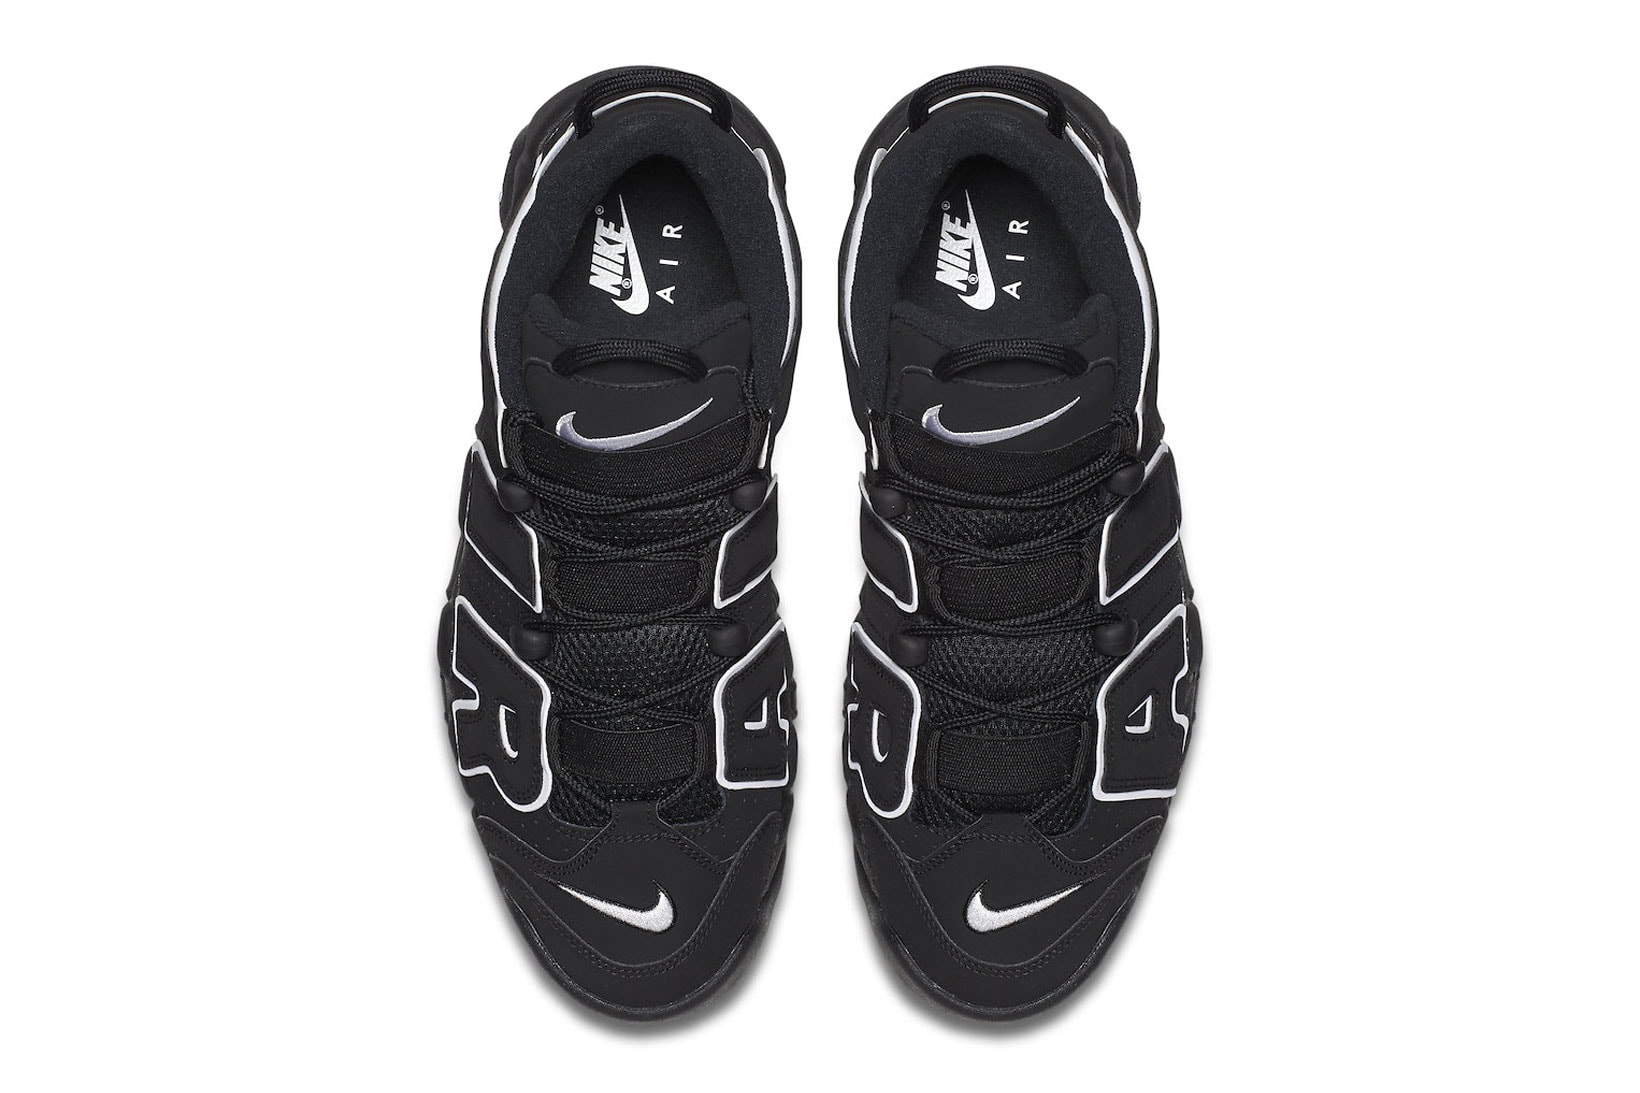 Nike Air More Uptempo "OG" Black White Re-Release Where to buy Info